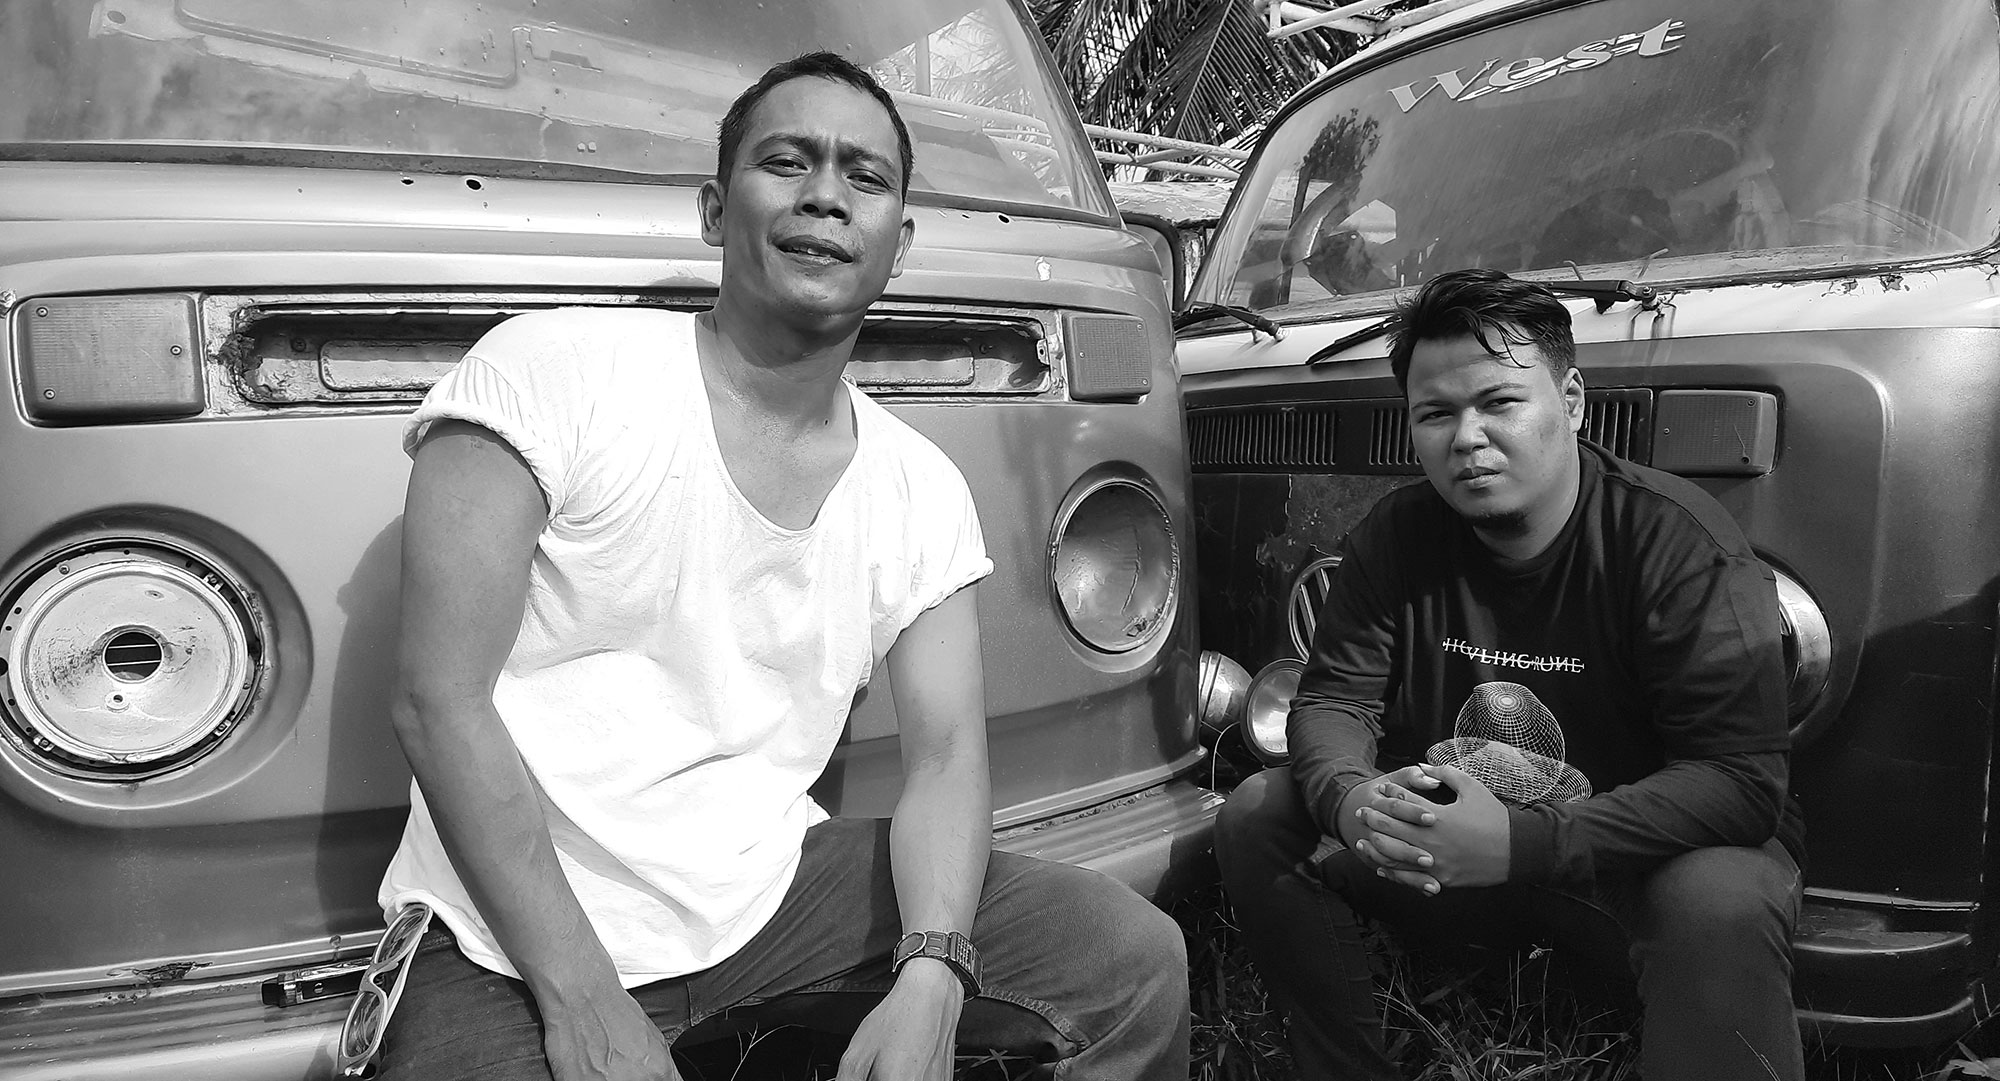 SICKOBEIN Kokoh Kibarkan Grunge di Aceh, Rilis Single “Ruang”